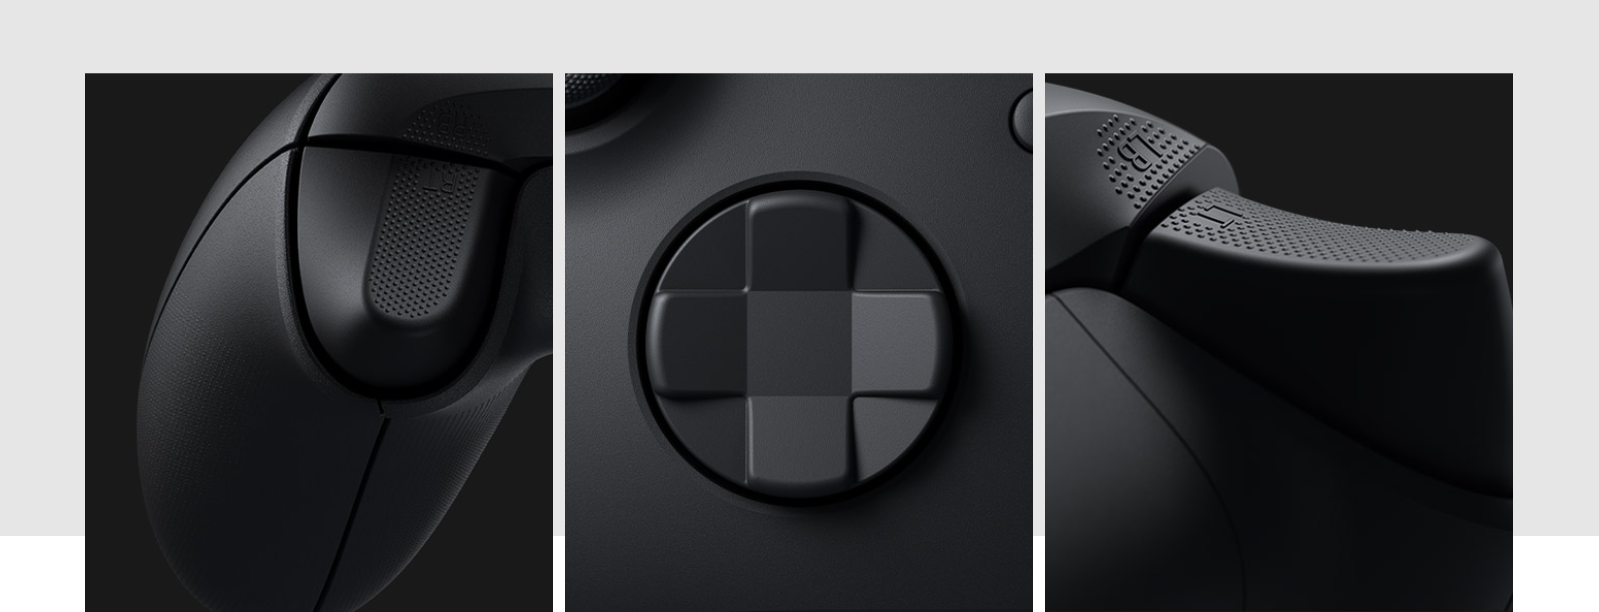 Tay cầm chơi game Xbox Series X Controller - Robot White có thiết kế cụm D-Pad mới